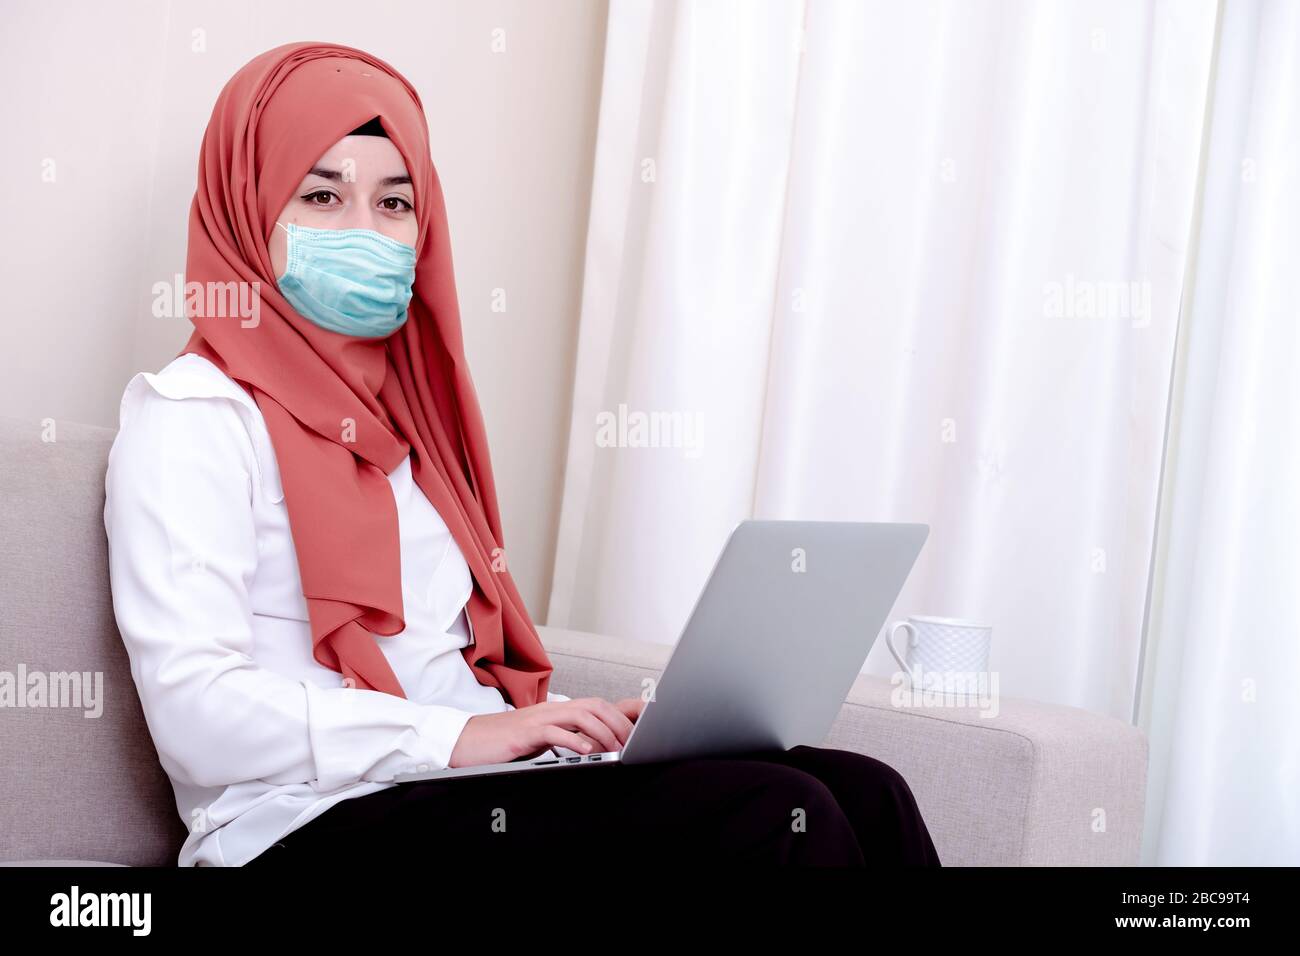 Fille musulmane portant un masque chirurgical pour la protection. La femme hijab prend un masque pour l'épidémie ou la pandémie de coronavirus ou COVID-19 Banque D'Images